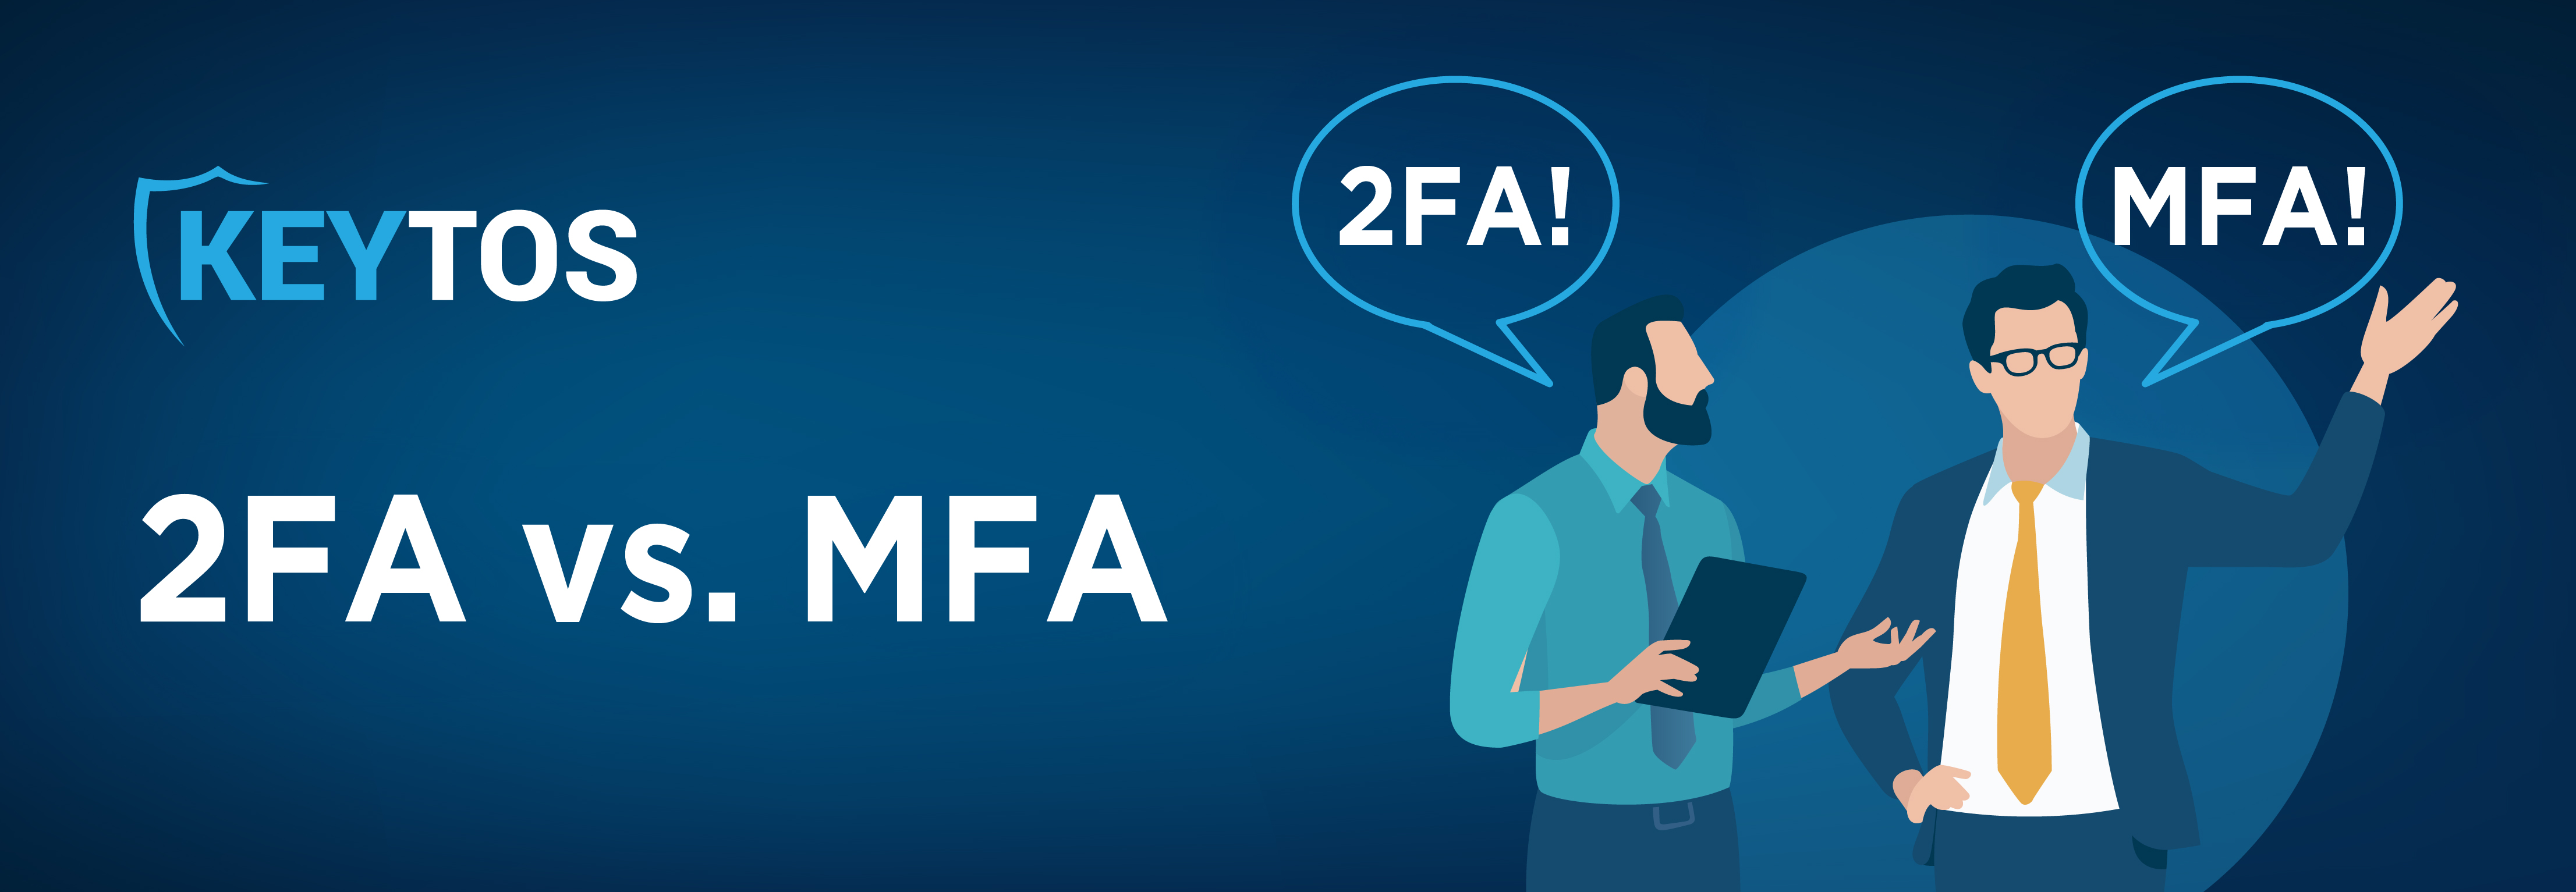 MFA frente a 2FA, autenticación multifactor frente a autenticación de dos factores, autenticación de dos factores frente a autenticación multifactor